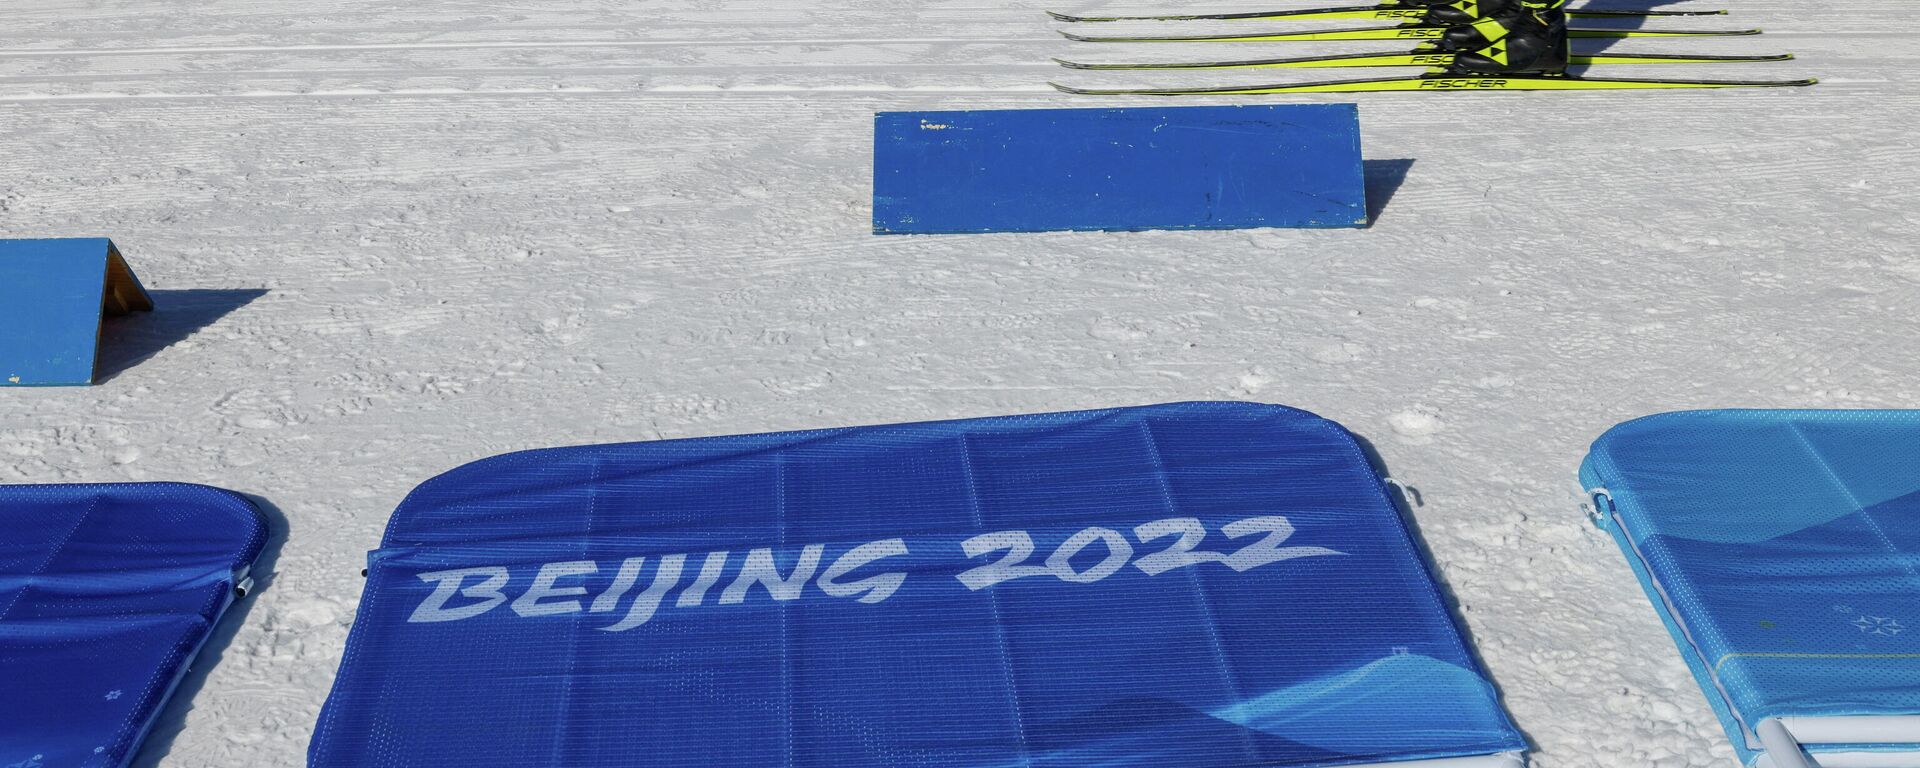 Тренировка в Национальном биатлонном центре перед зимними Олимпийскими играми 2022 года в Пекине - Sputnik Беларусь, 1920, 28.01.2022